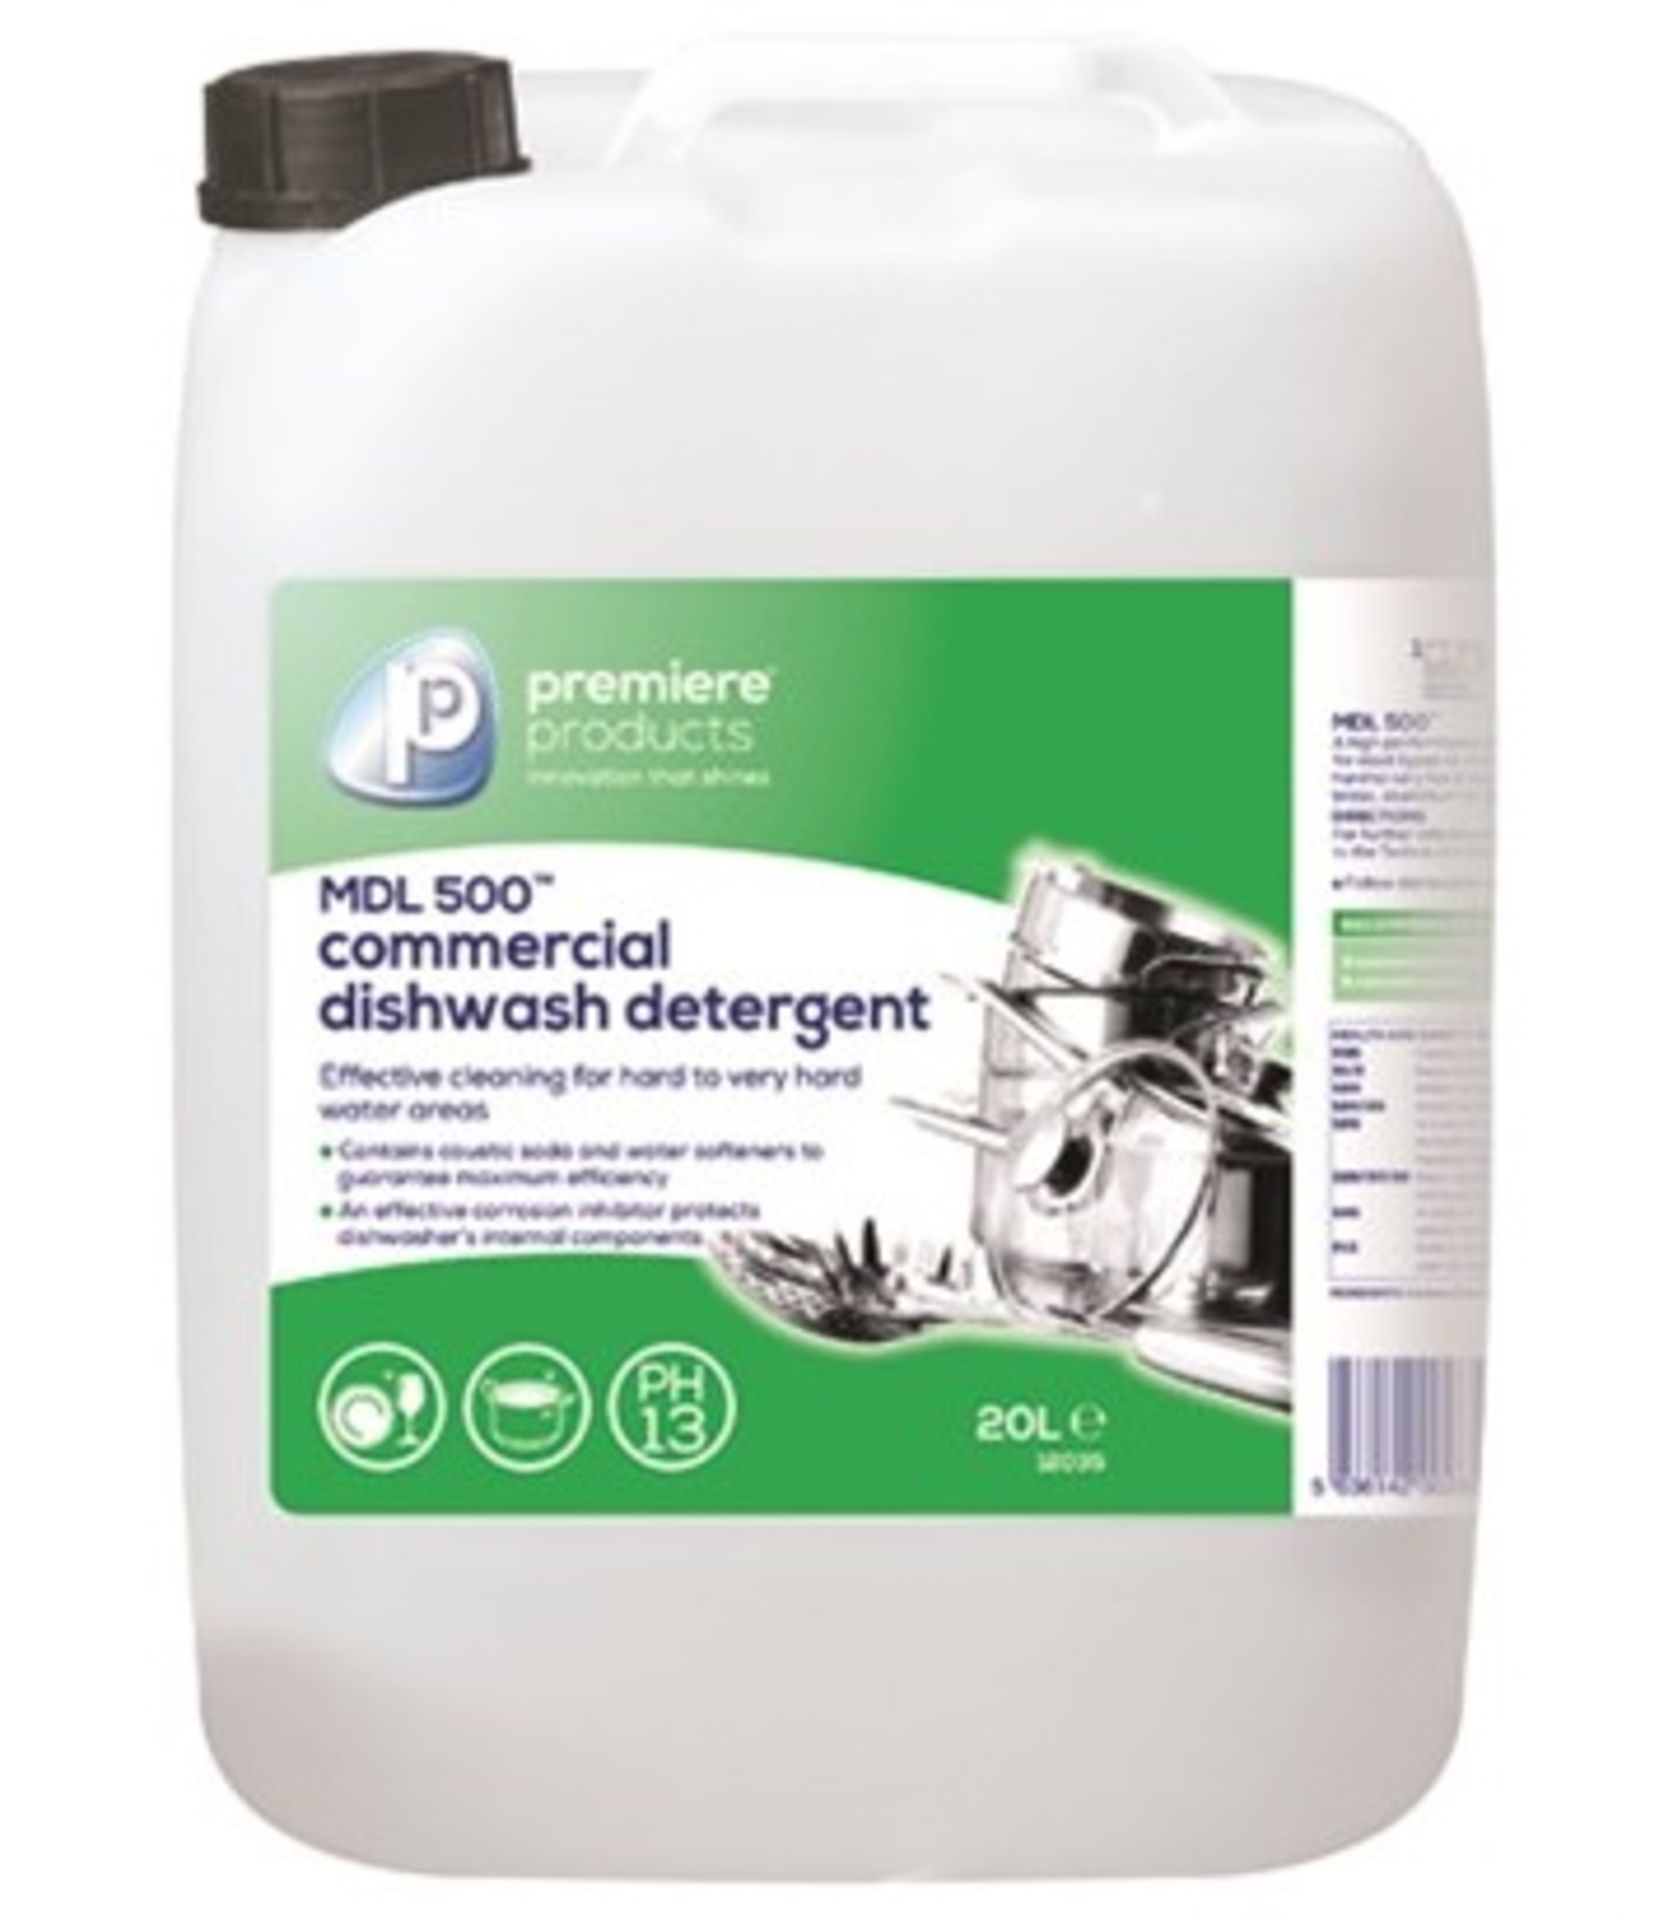 1 x Premiere 20 Litre MDL 500 Commercial Dishwash Detergent - Premiere Products - Includes 1 x 20